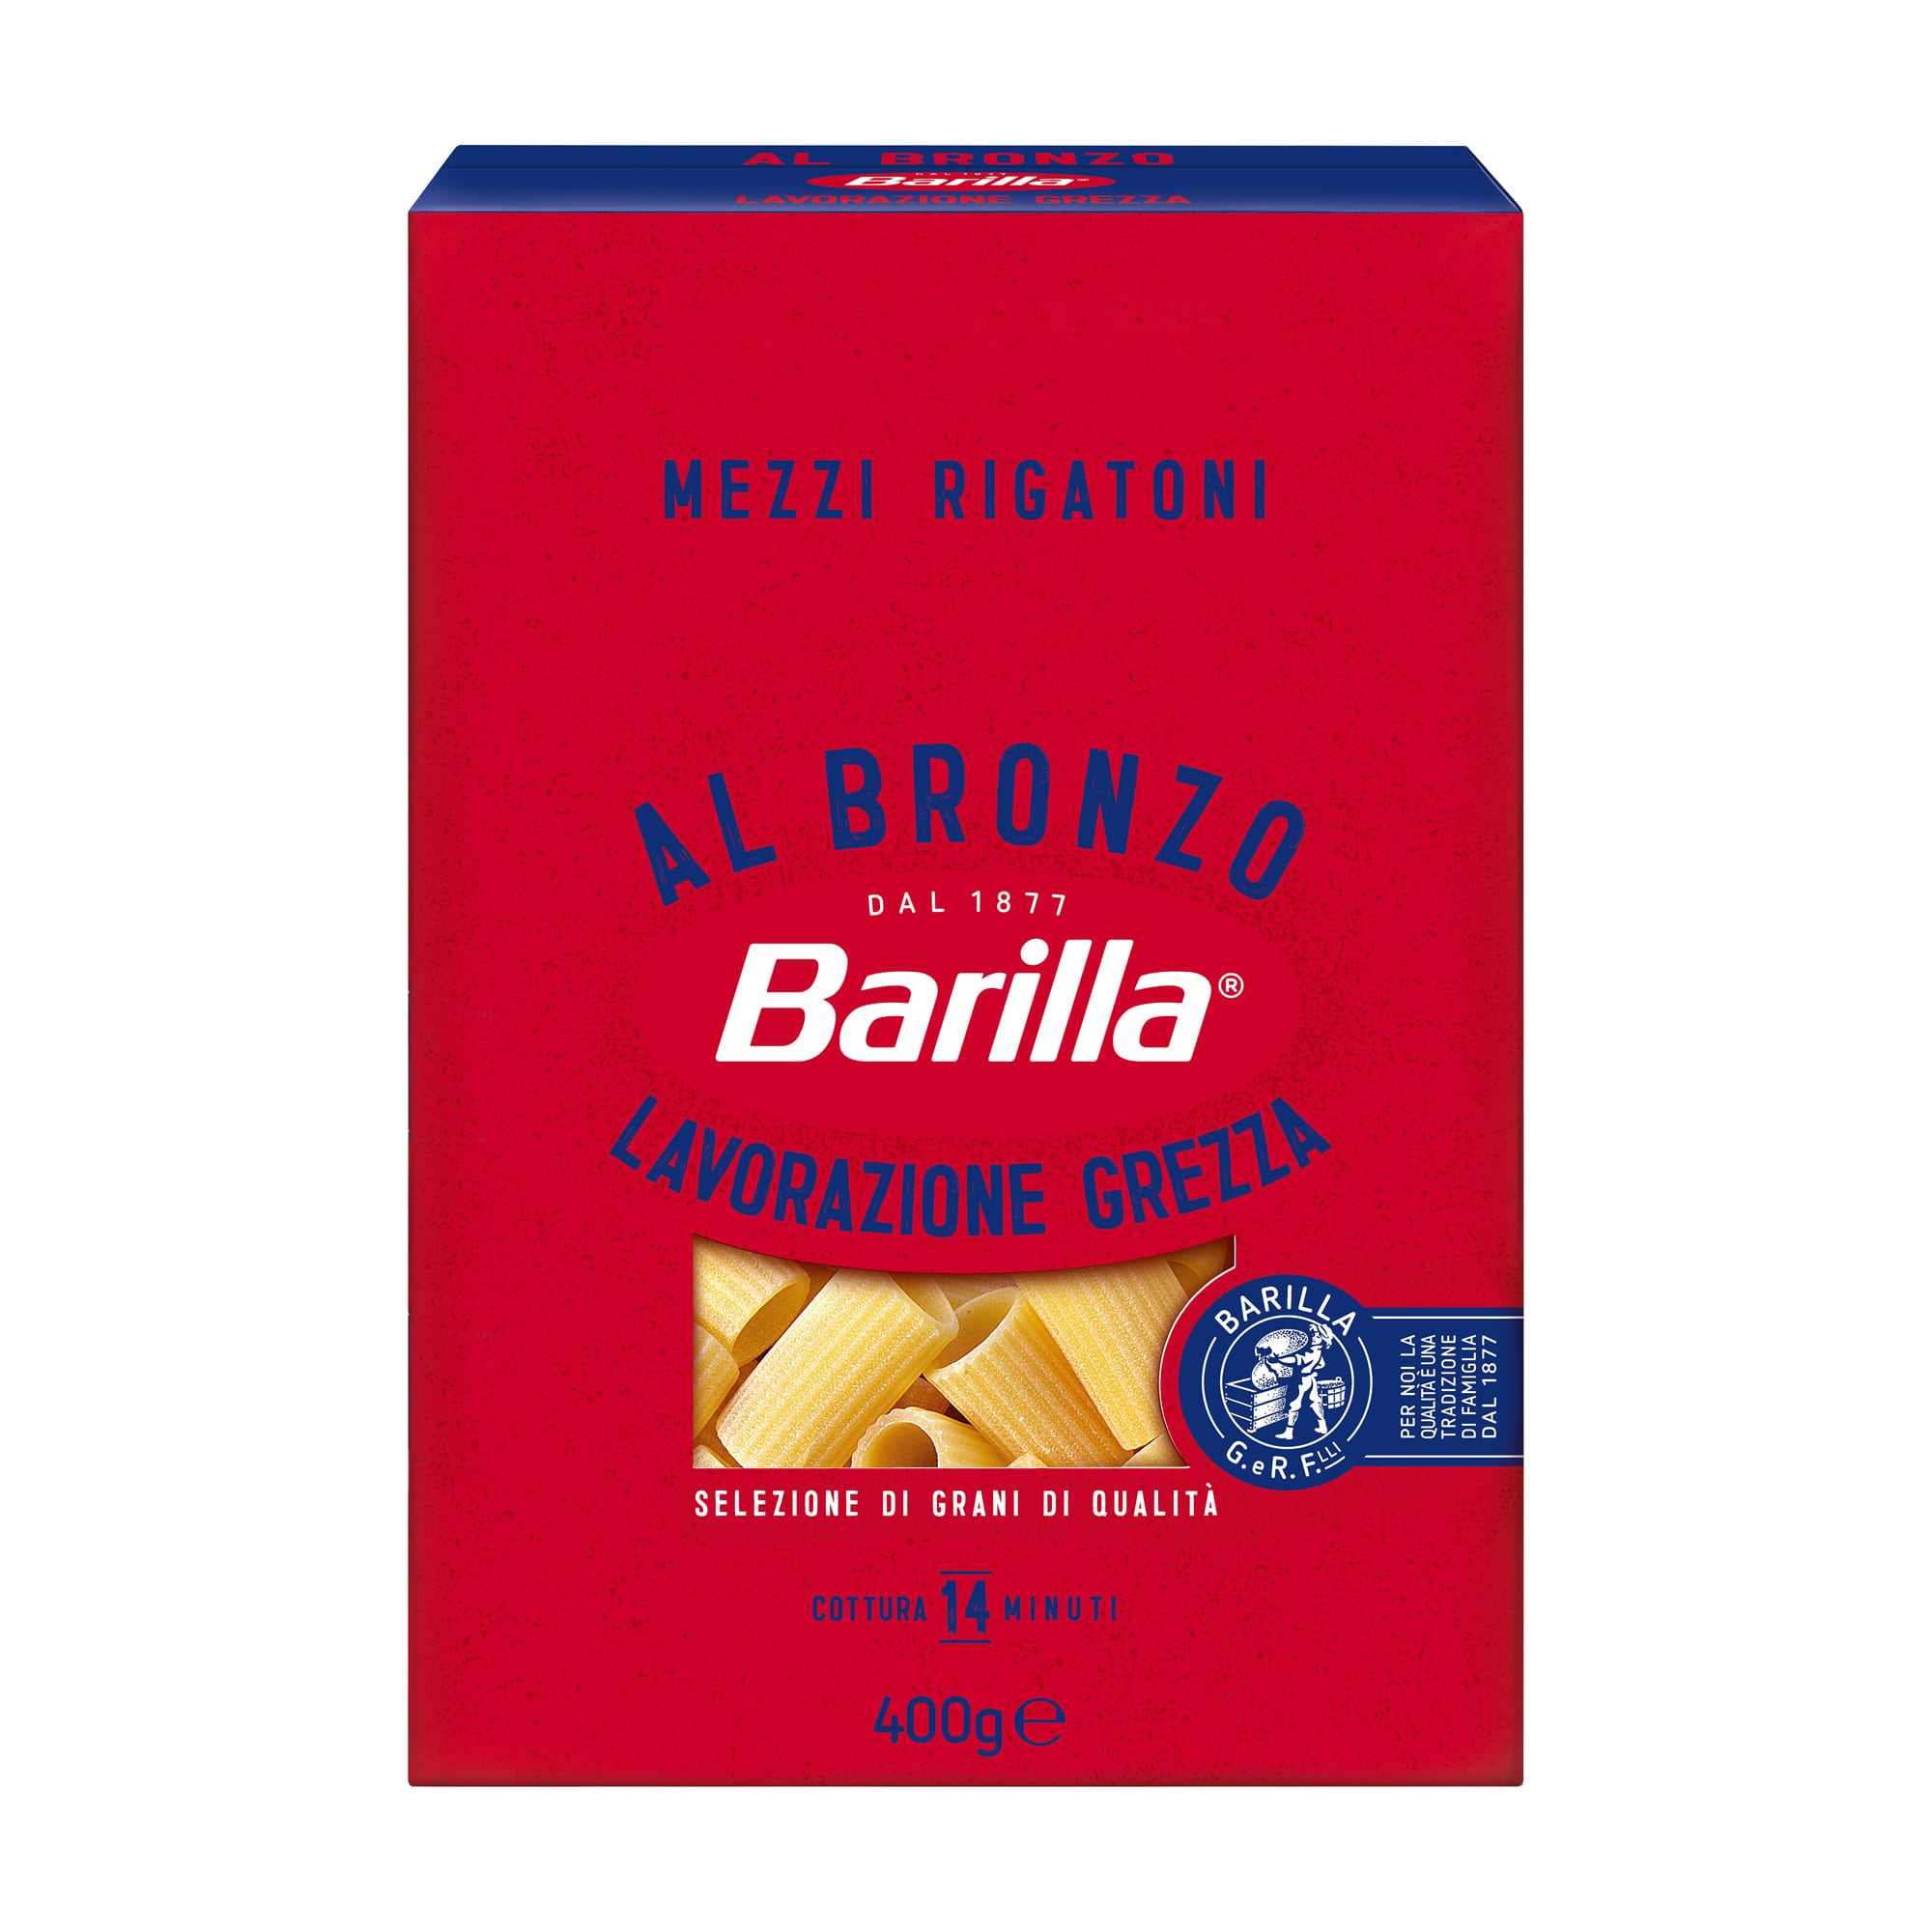 Barilla Al Bronzo Mezzi Preisvergleich - Rigatoni